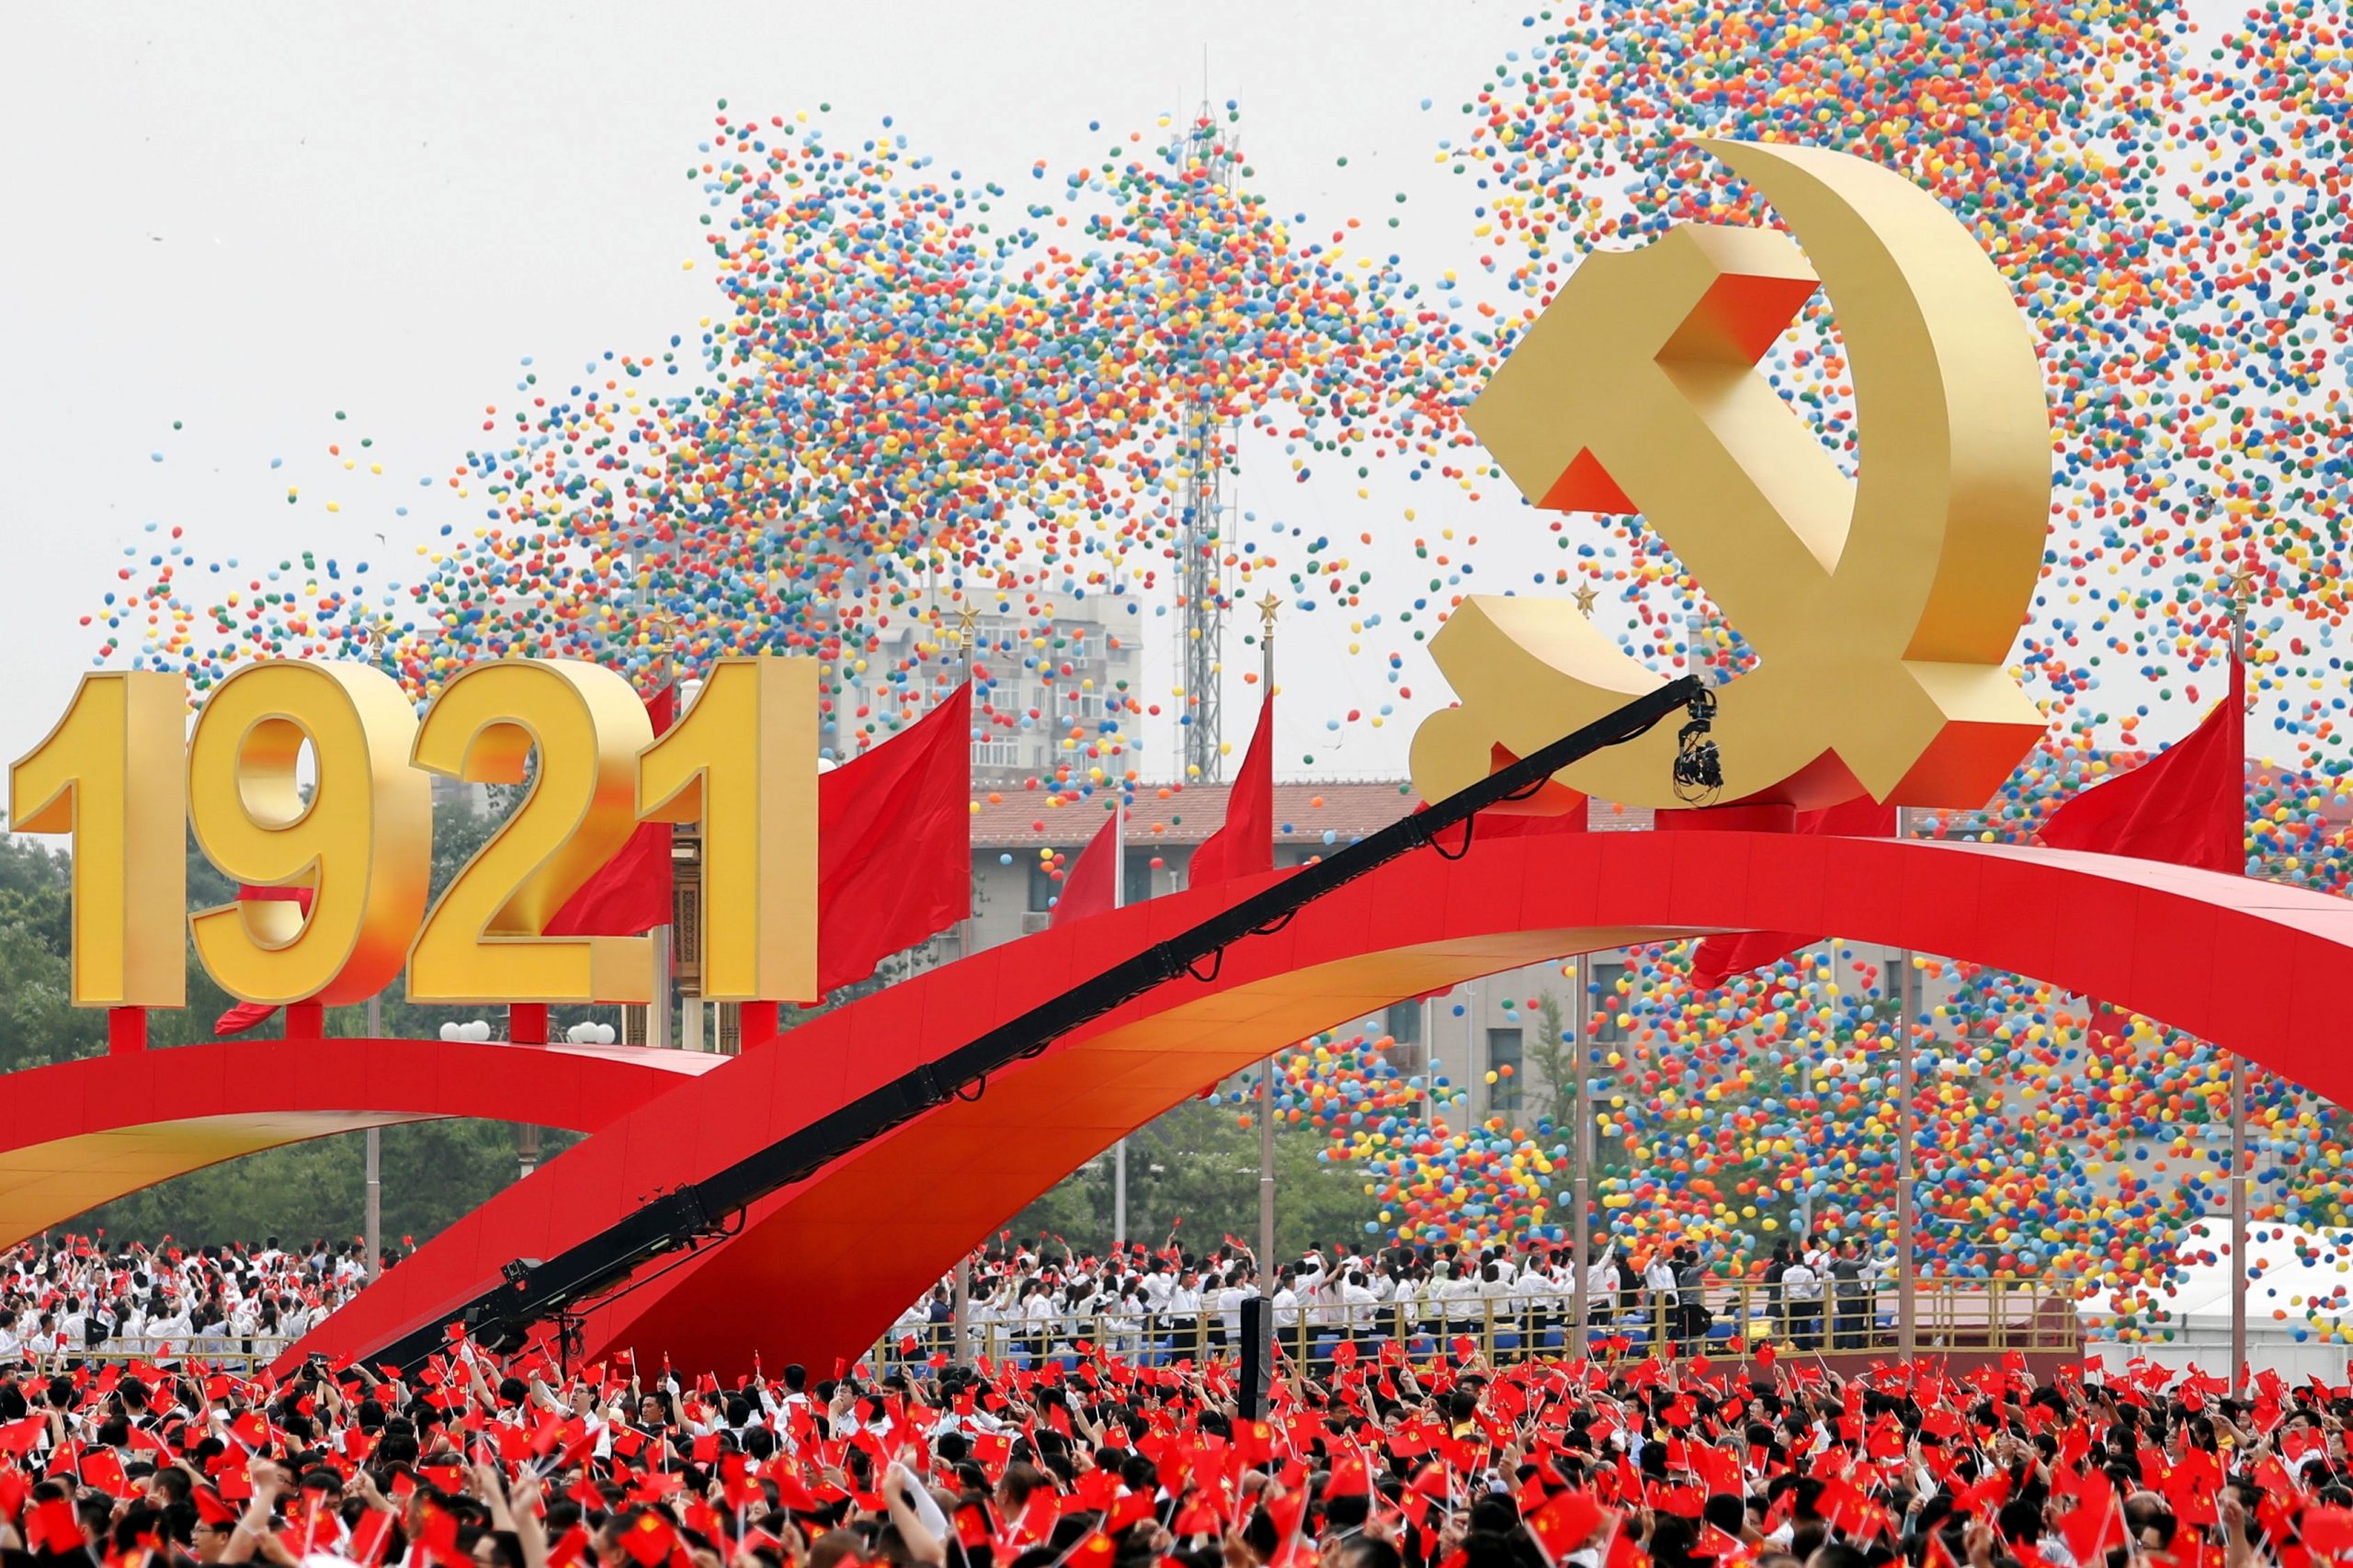 Kitajska komunistična partija